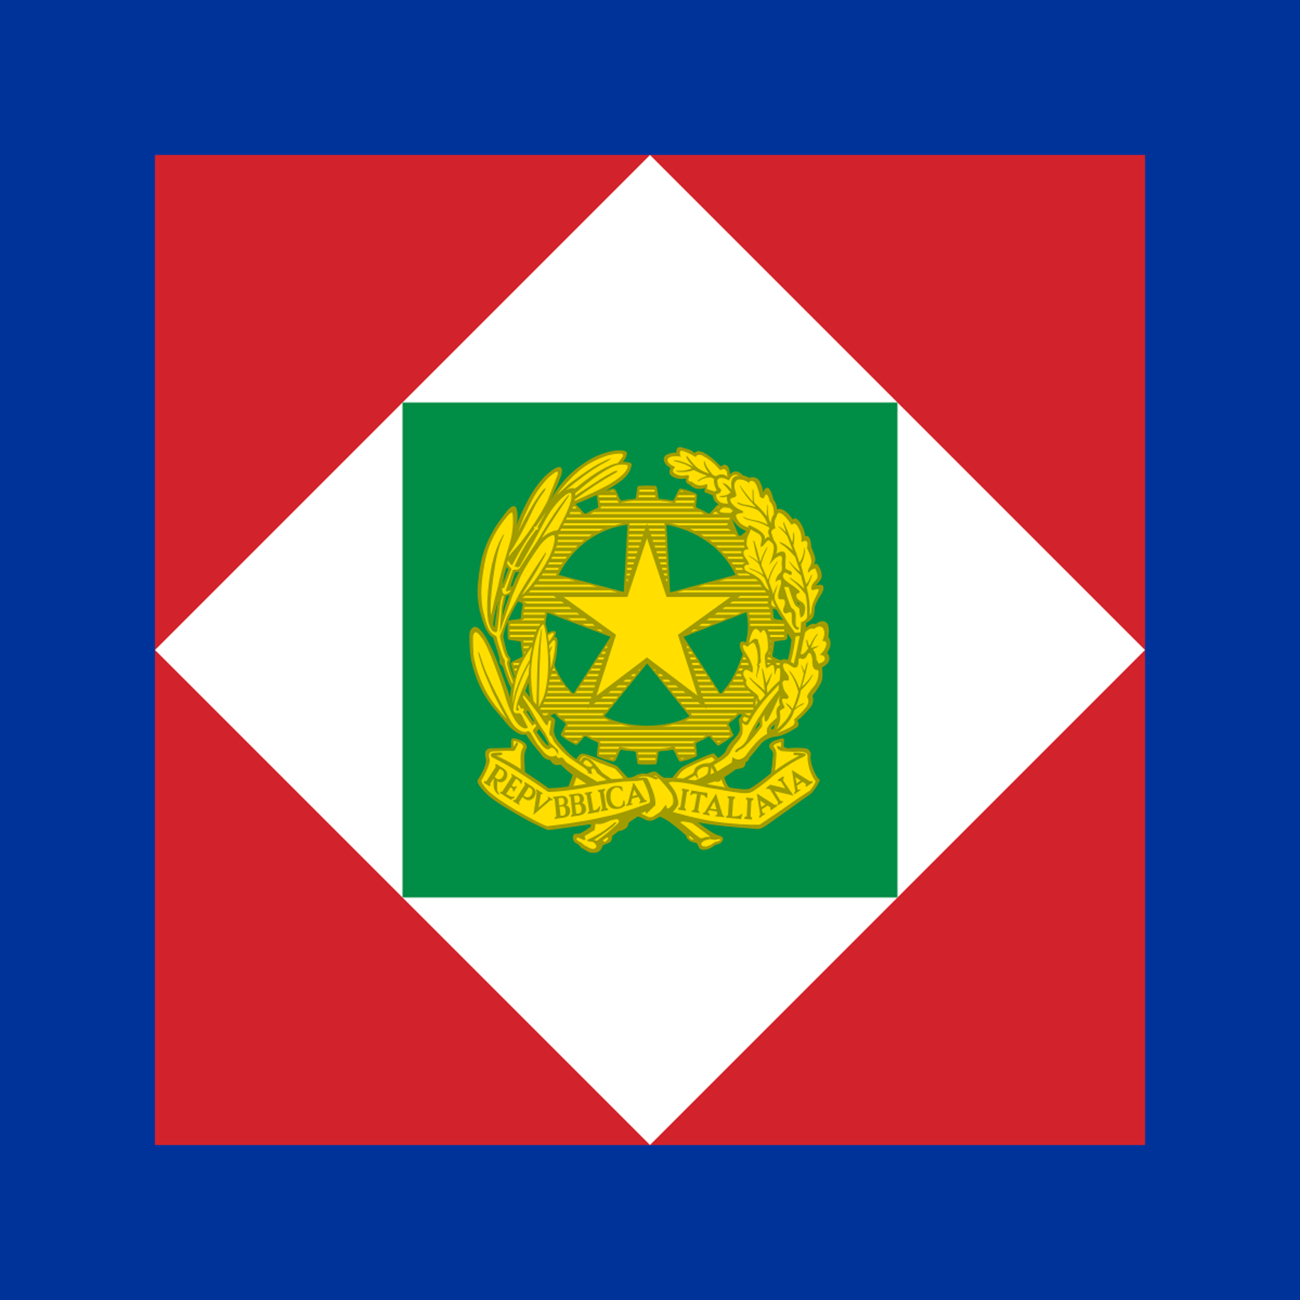 logo stendardo ufficiale della presidenza della repubblica italiana